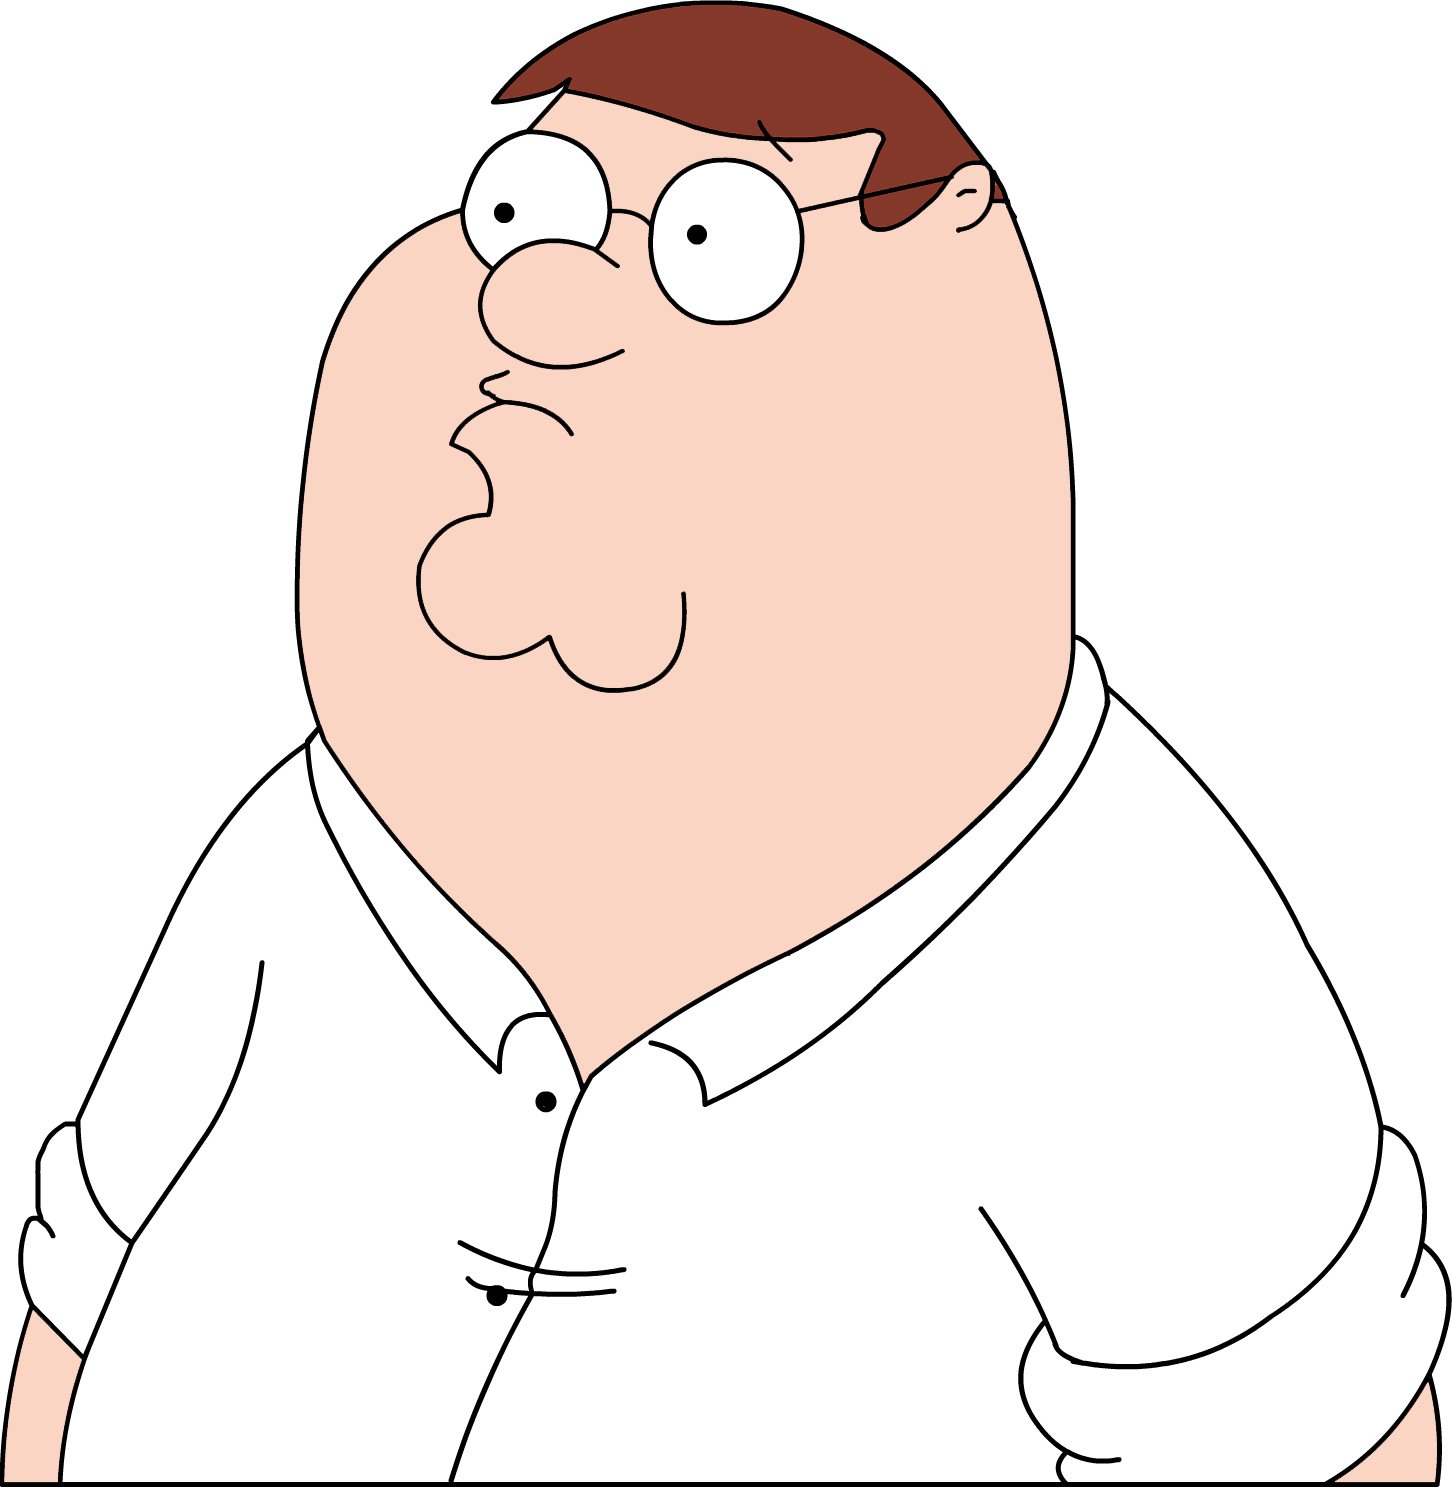 Family Guy Cartoon Series Humor Funny Familyguy